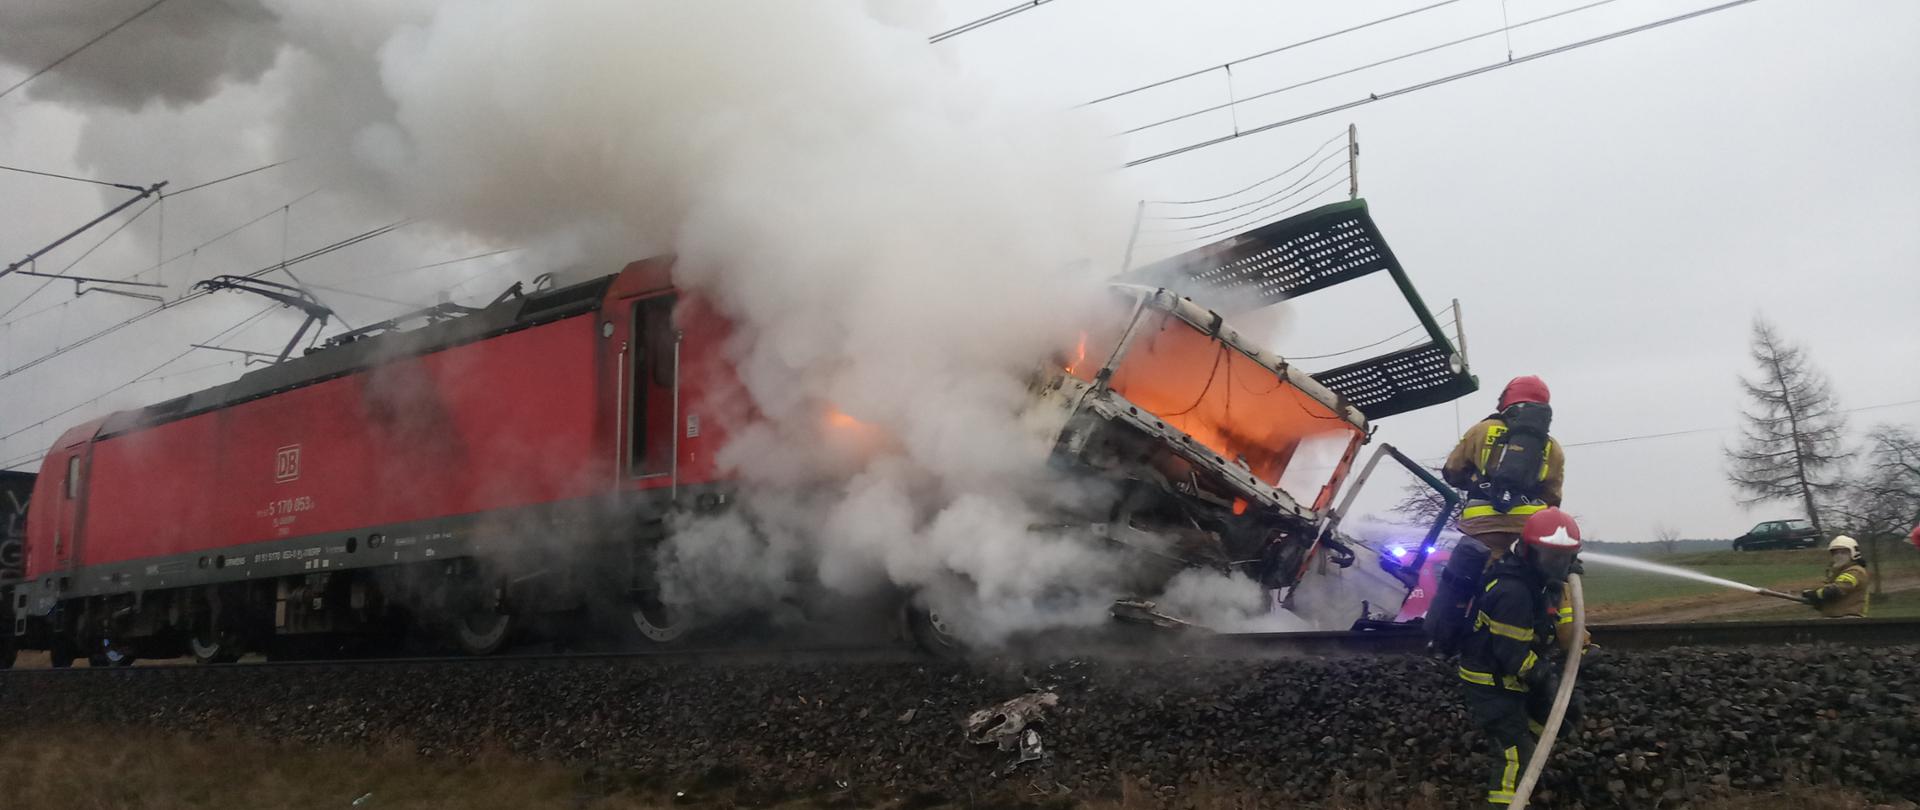 Na zdjęciu widać płonący samochód ciężarowy po zderzeniu z lokomotywą. Jest duże zadymienie a strażacy zabezpieczeni w aparaty ochrony dróg oddechowych gaszą pożar